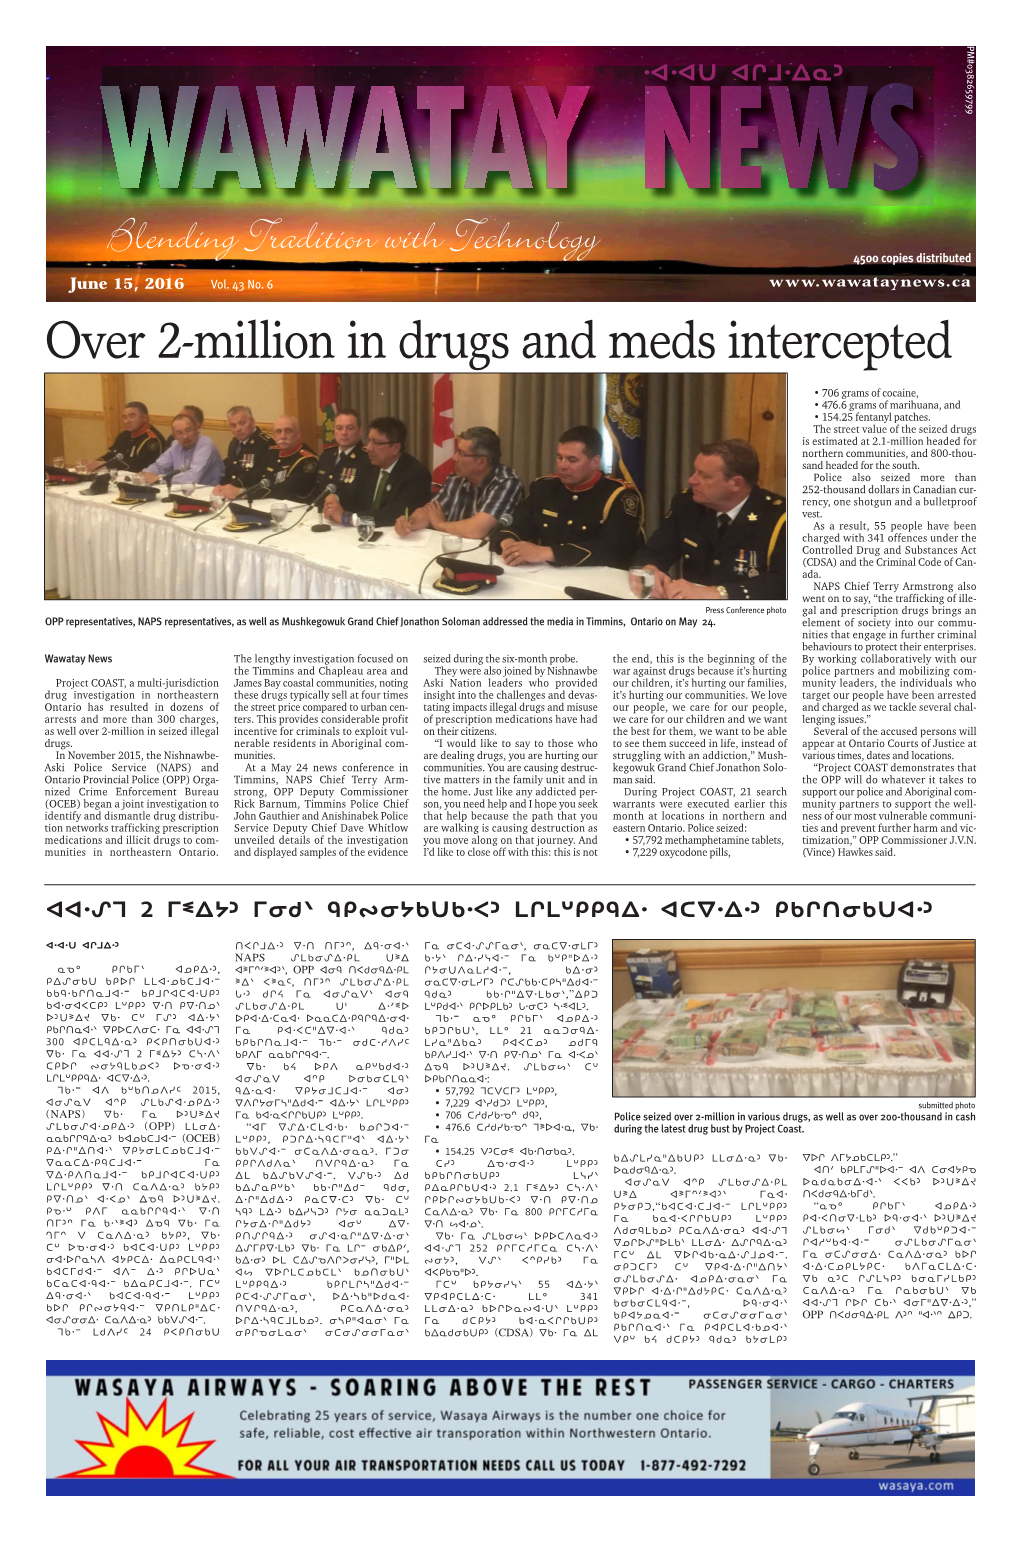 Over 2-Million in Drugs and Meds Intercepted